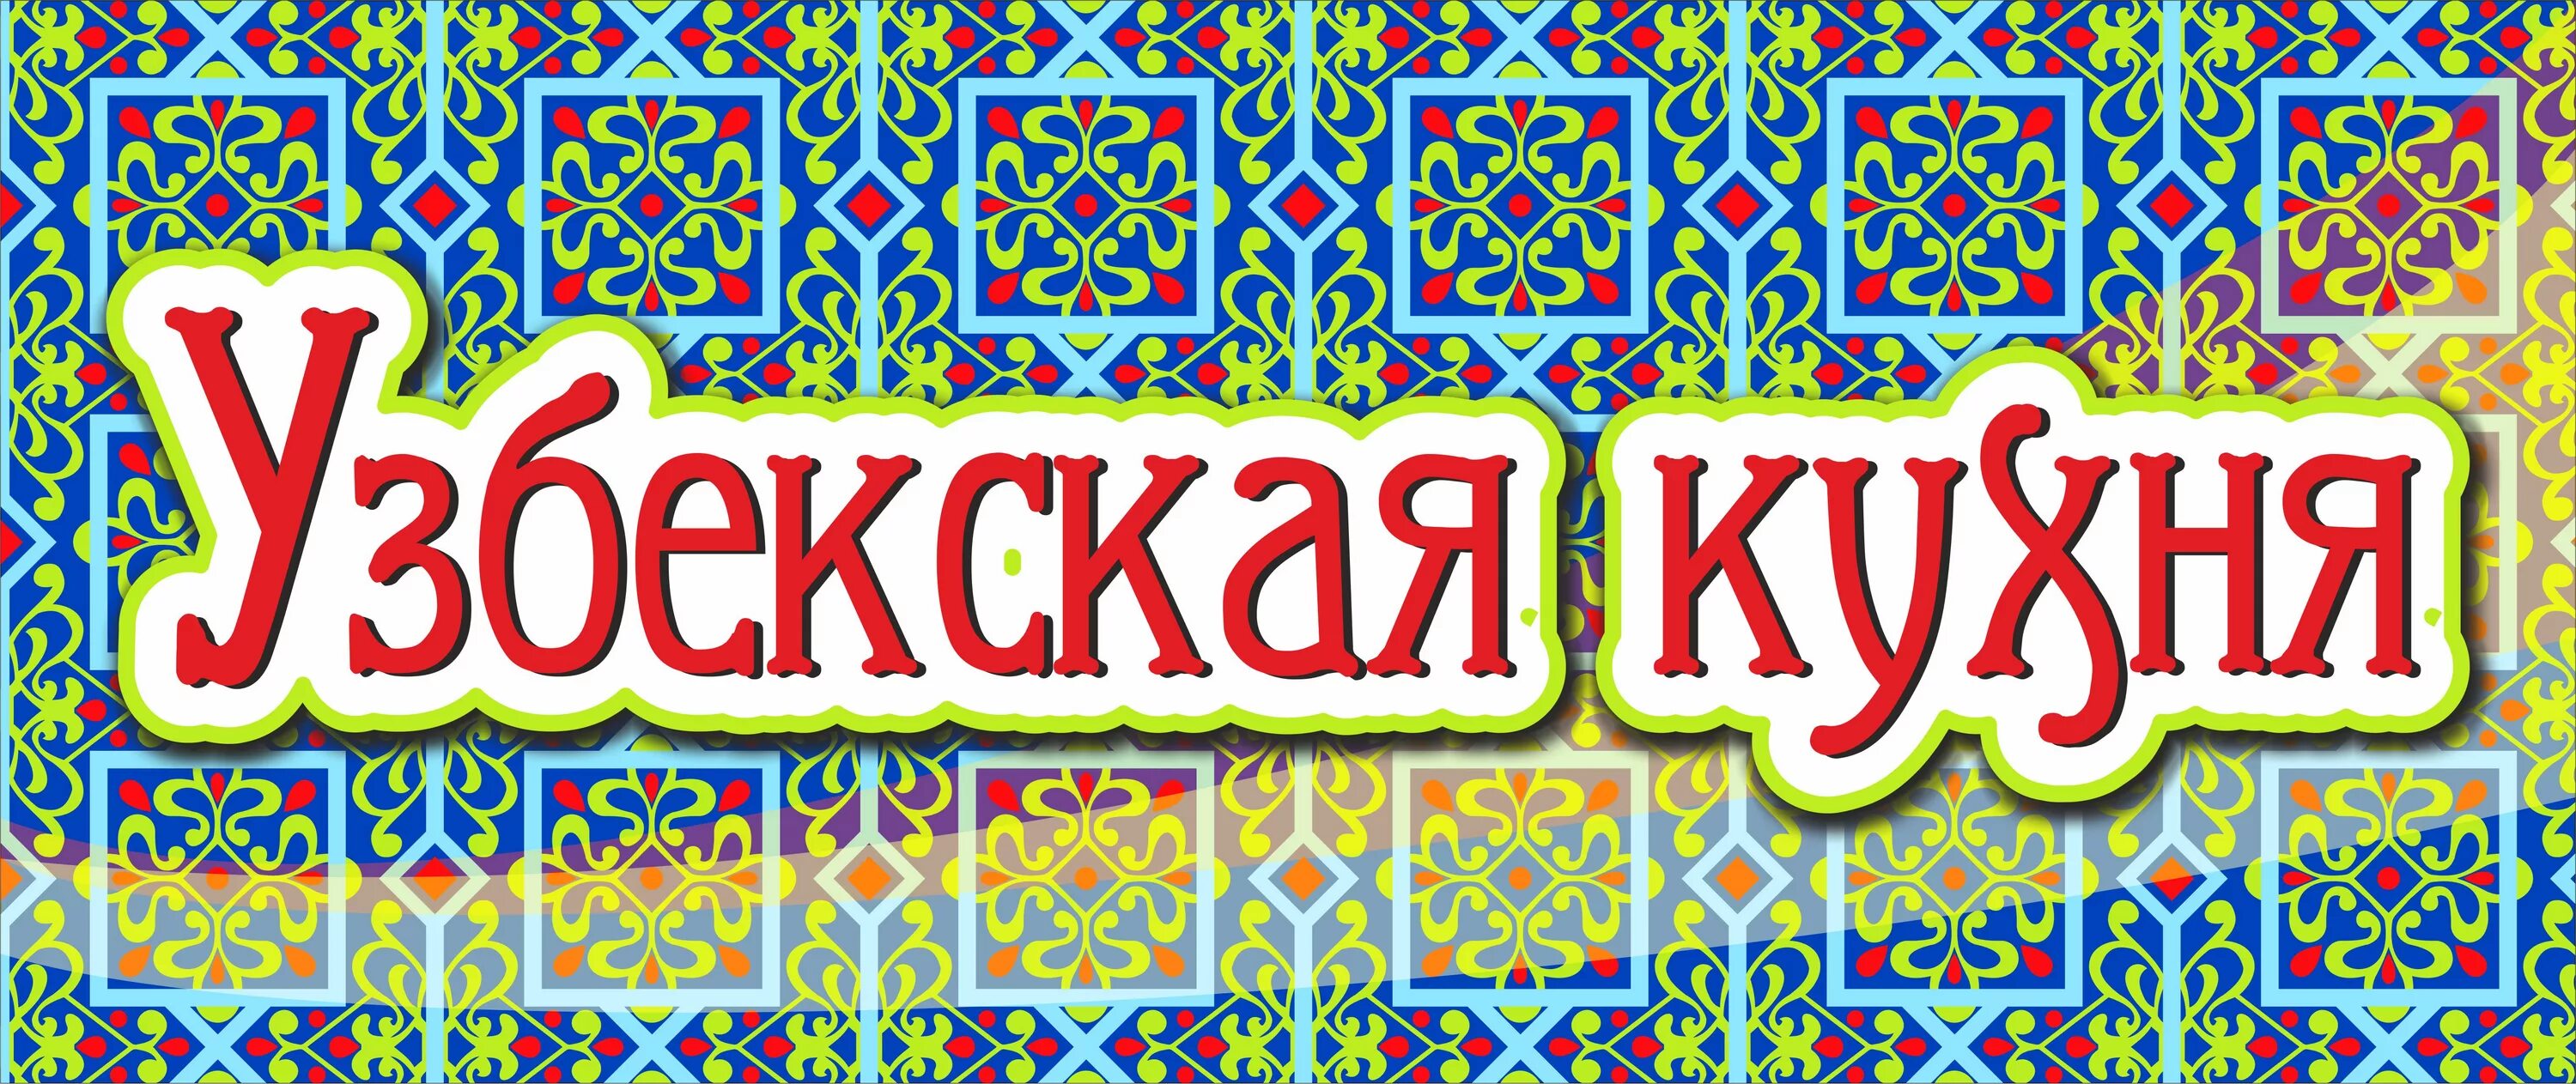 Узбекский без рекламы. Узбекская кухня. Узбекская кухня вывеска. Узбекская кухня баннер. Узбекская кухня реклама.